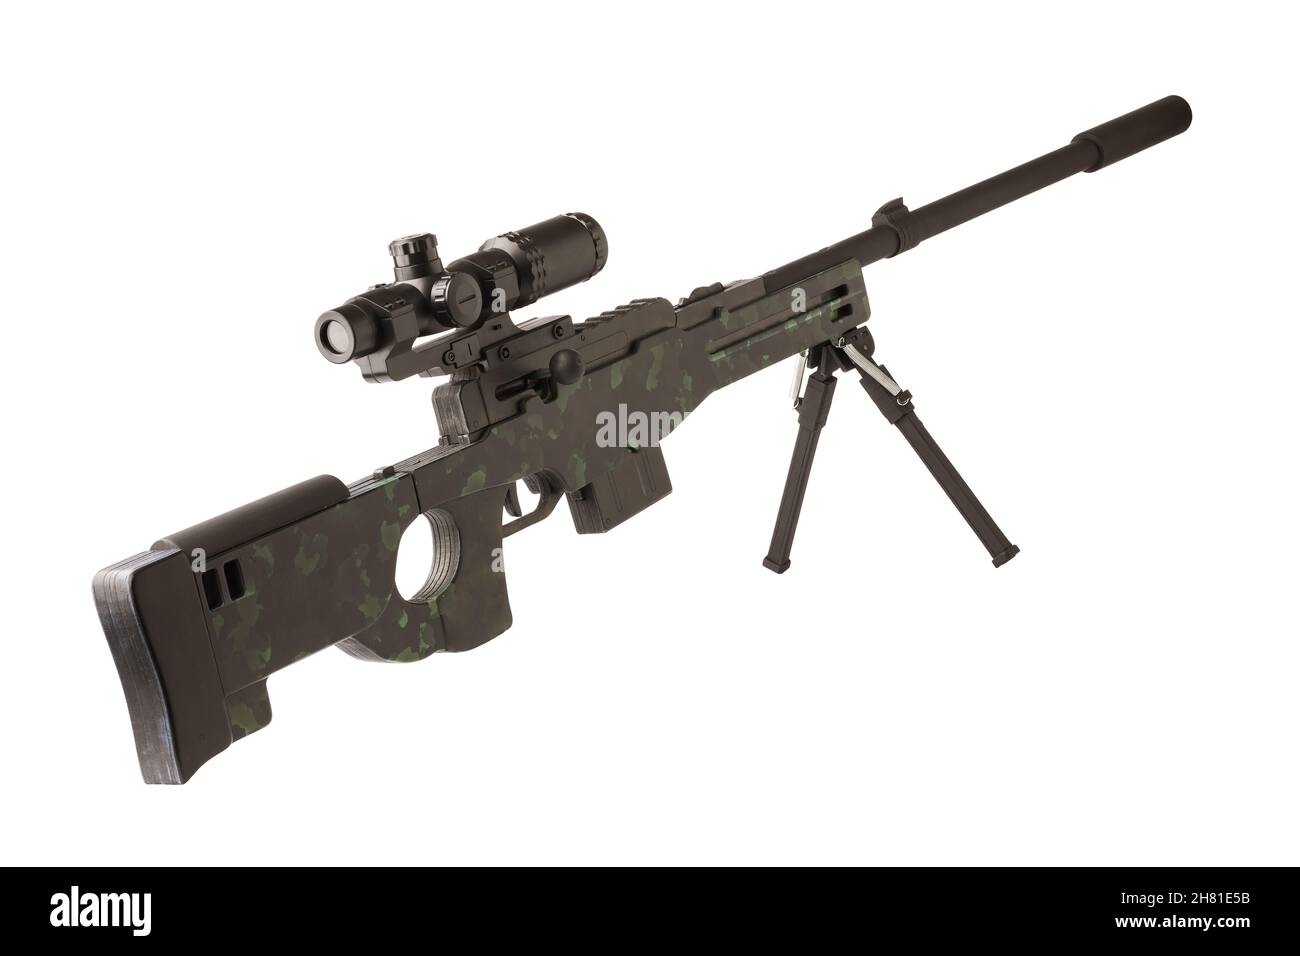 Holzspielzeug Scharfschützengewehr schwarz lackiert mit Teleskop-Sicht isoliert auf weißem Hintergrund Stockfoto